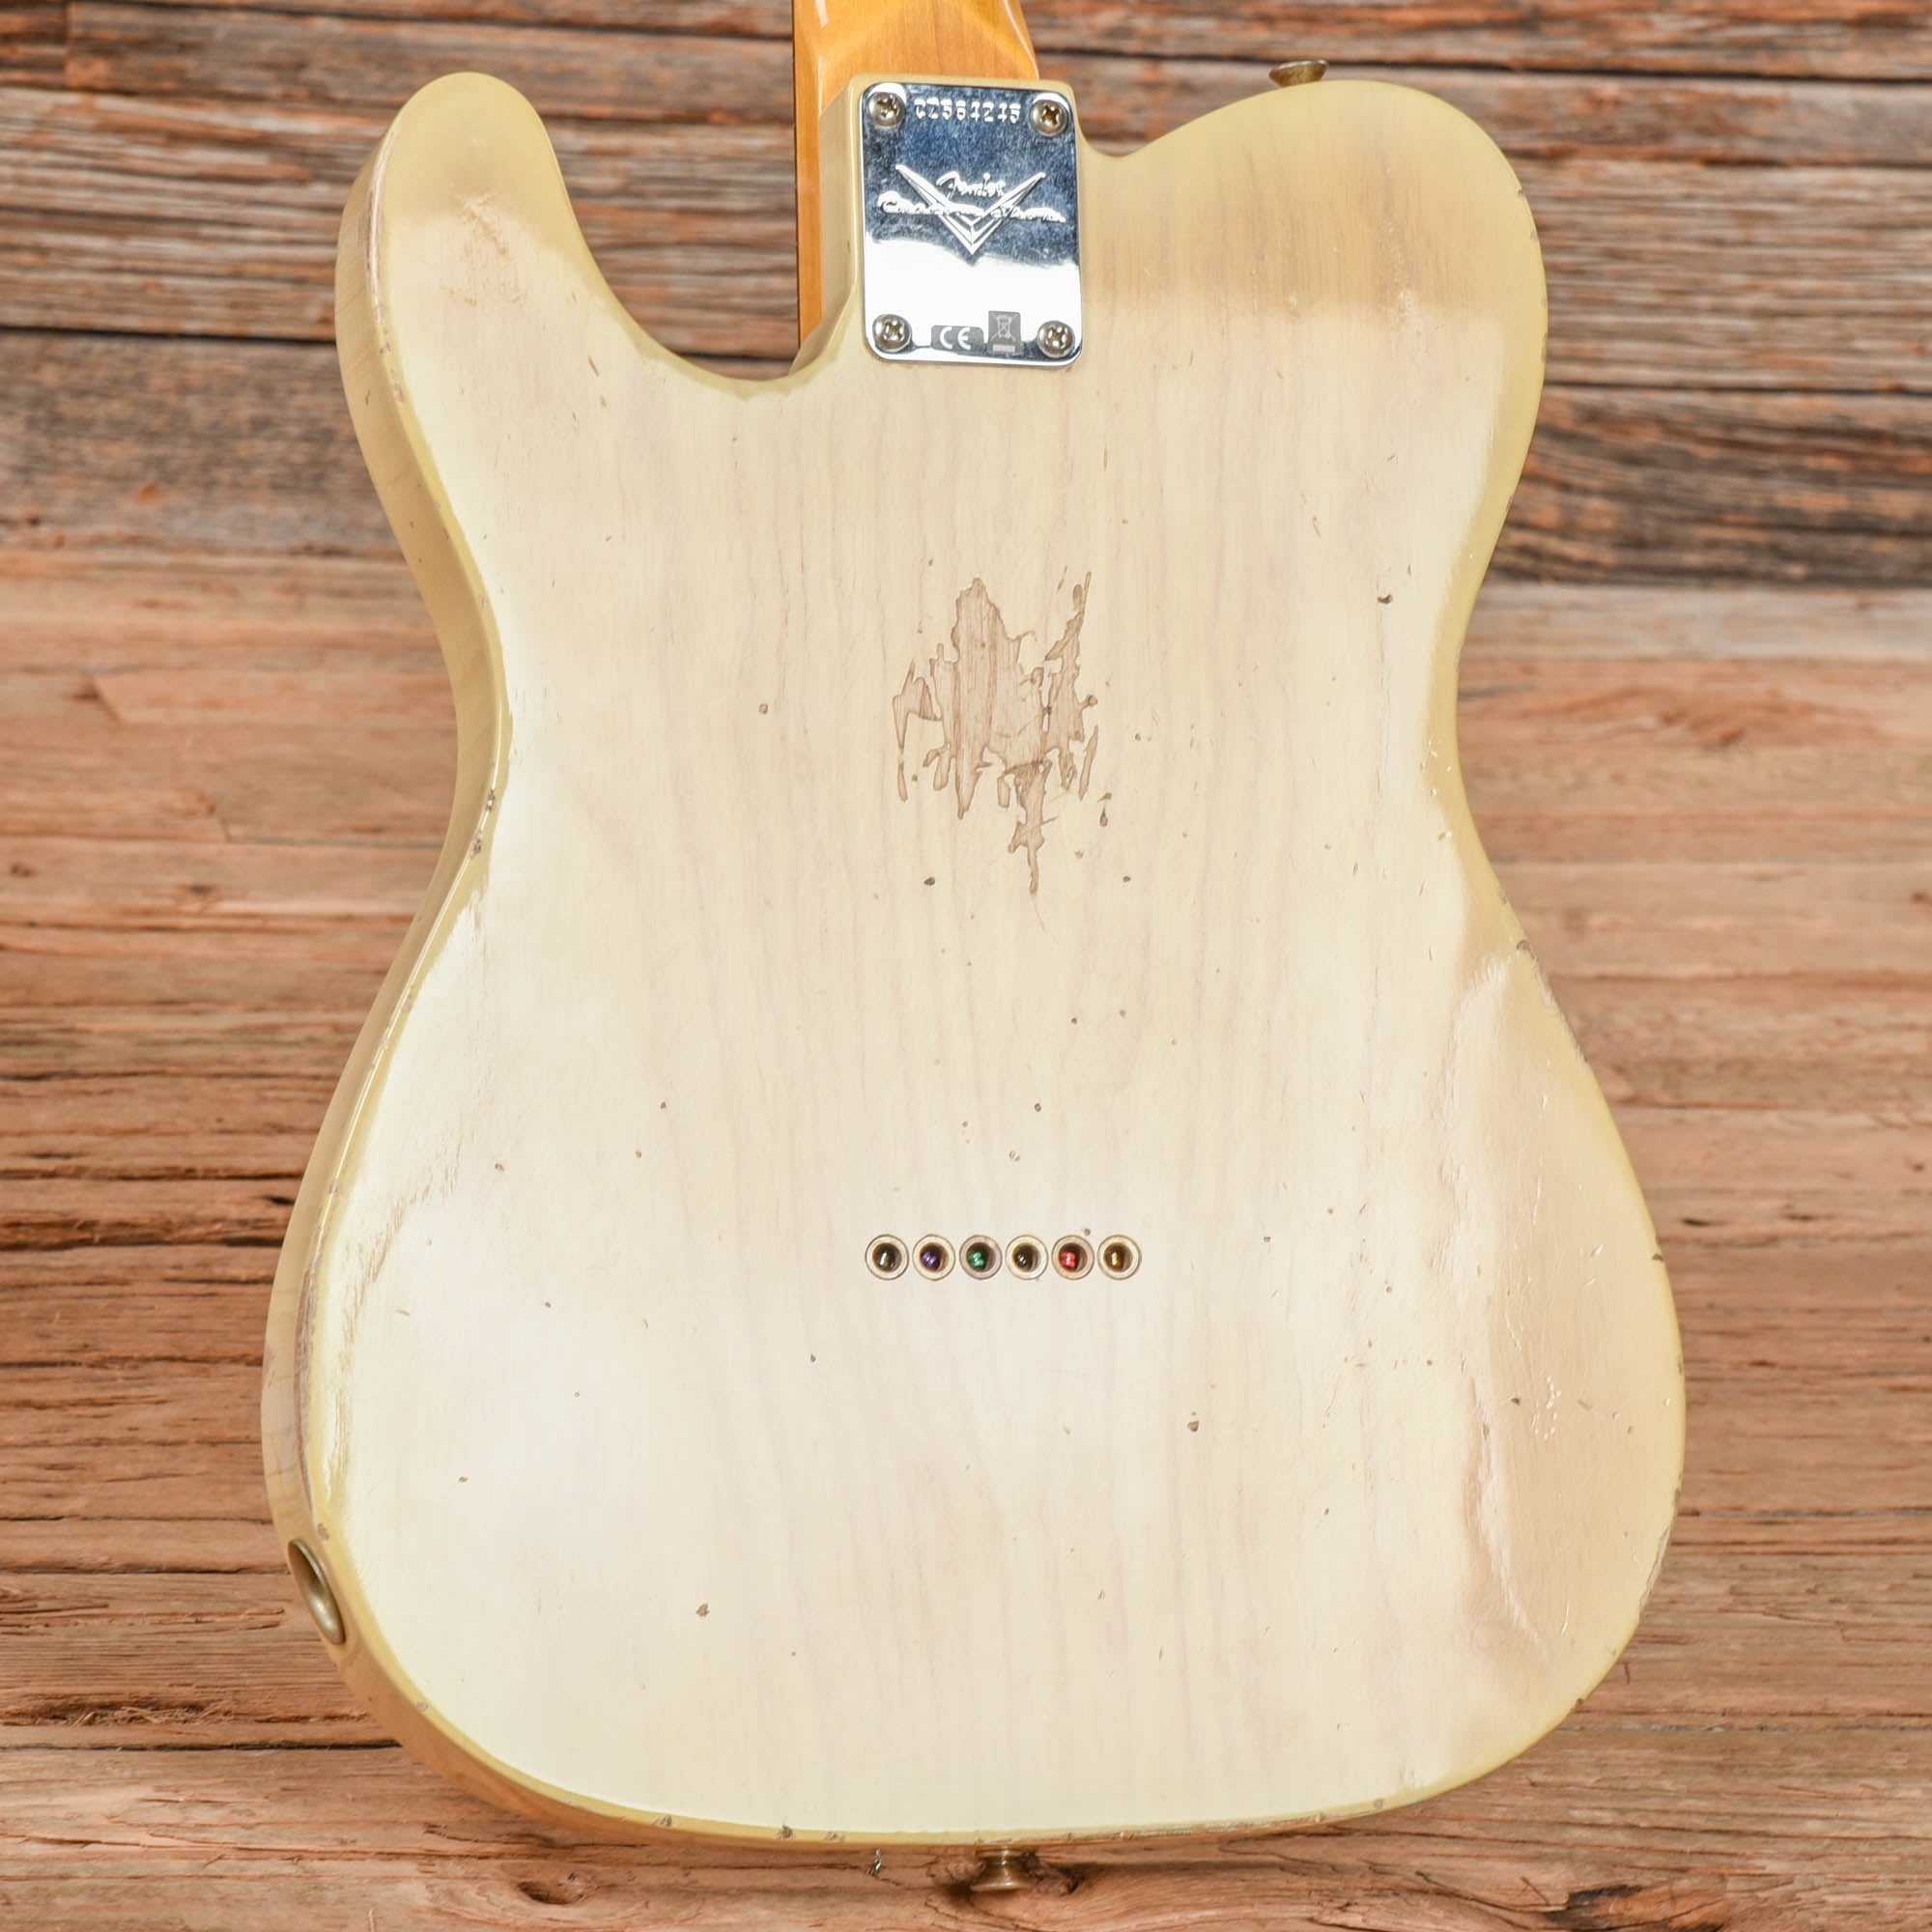 Fender Custom Shop '60 Telecaster Relic Aged White Blonde 2022